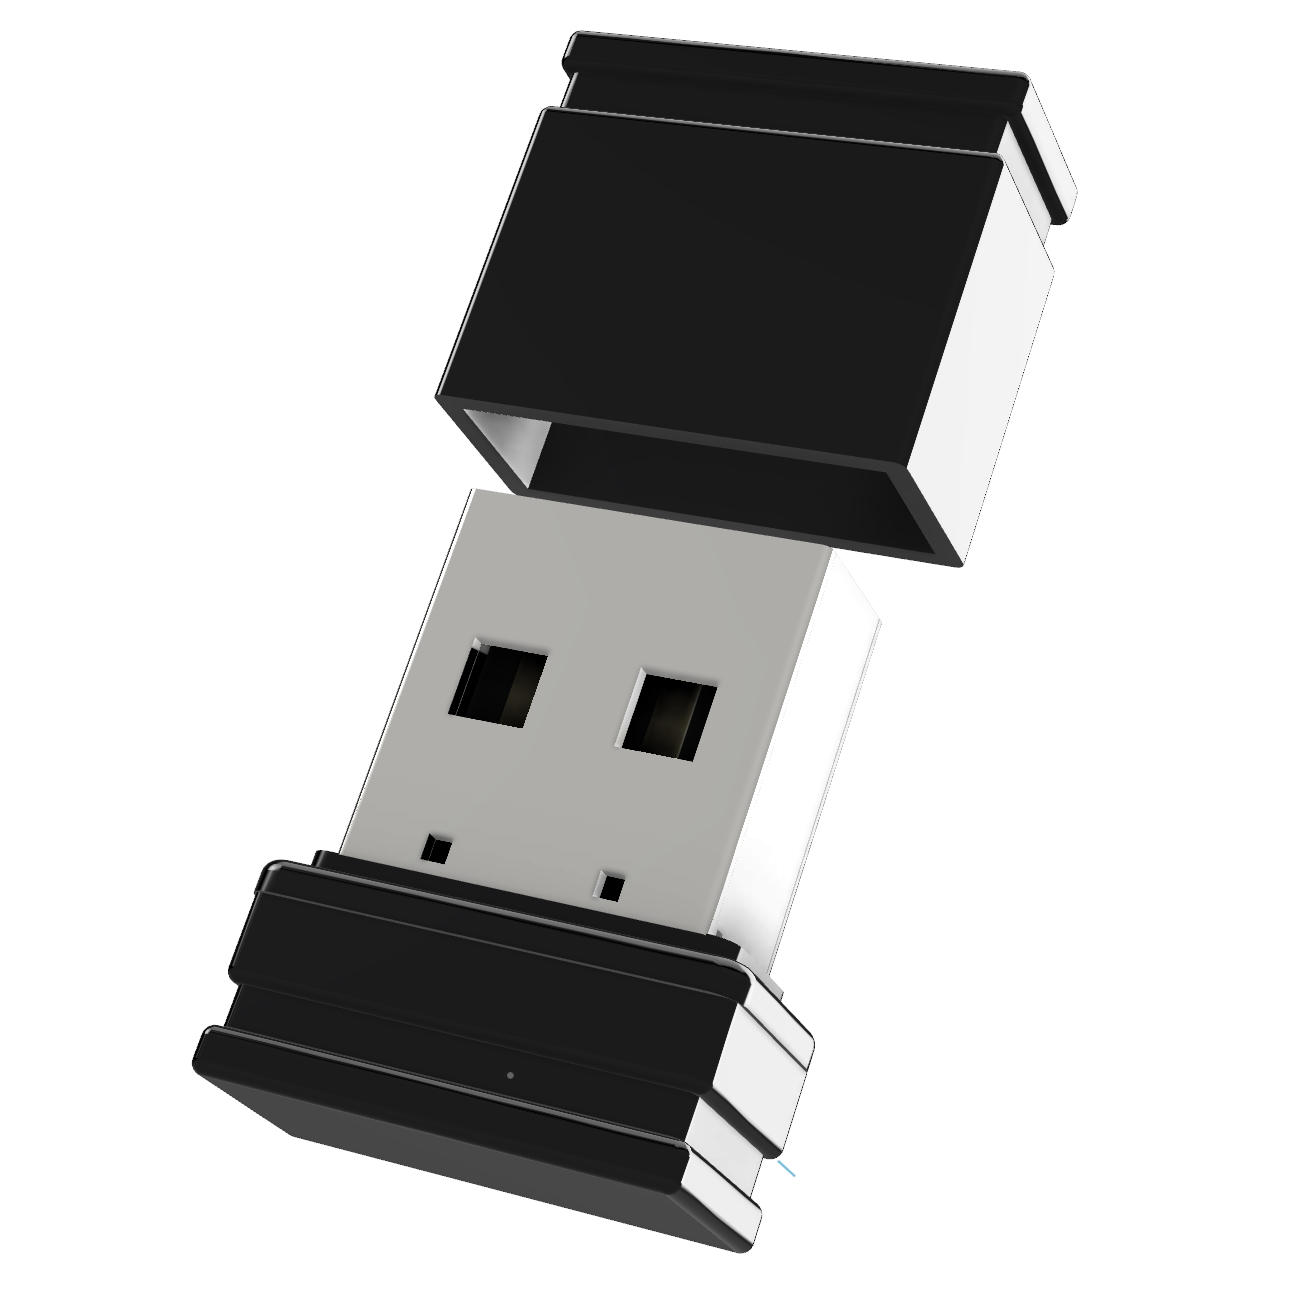 USB GERMANY Mini 2 P1 (Schwarz, GB) USB-Stick ®ULTRA